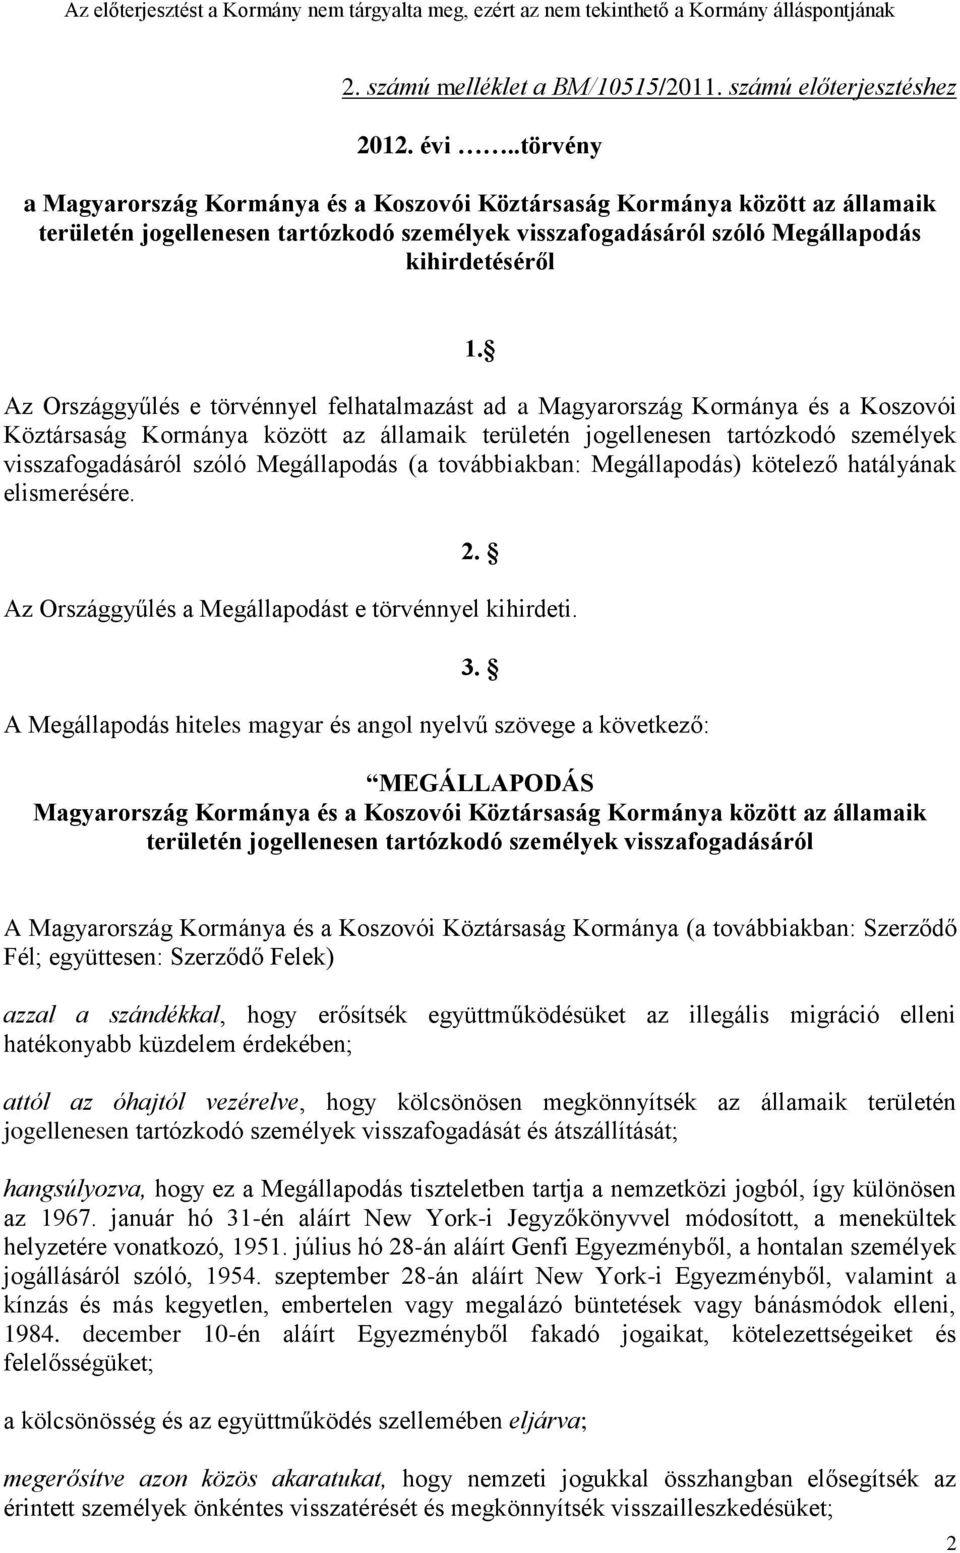 Az Országgyűlés e törvénnyel felhatalmazást ad a Magyarország Kormánya és a Koszovói Köztársaság Kormánya között az államaik területén jogellenesen tartózkodó személyek visszafogadásáról szóló